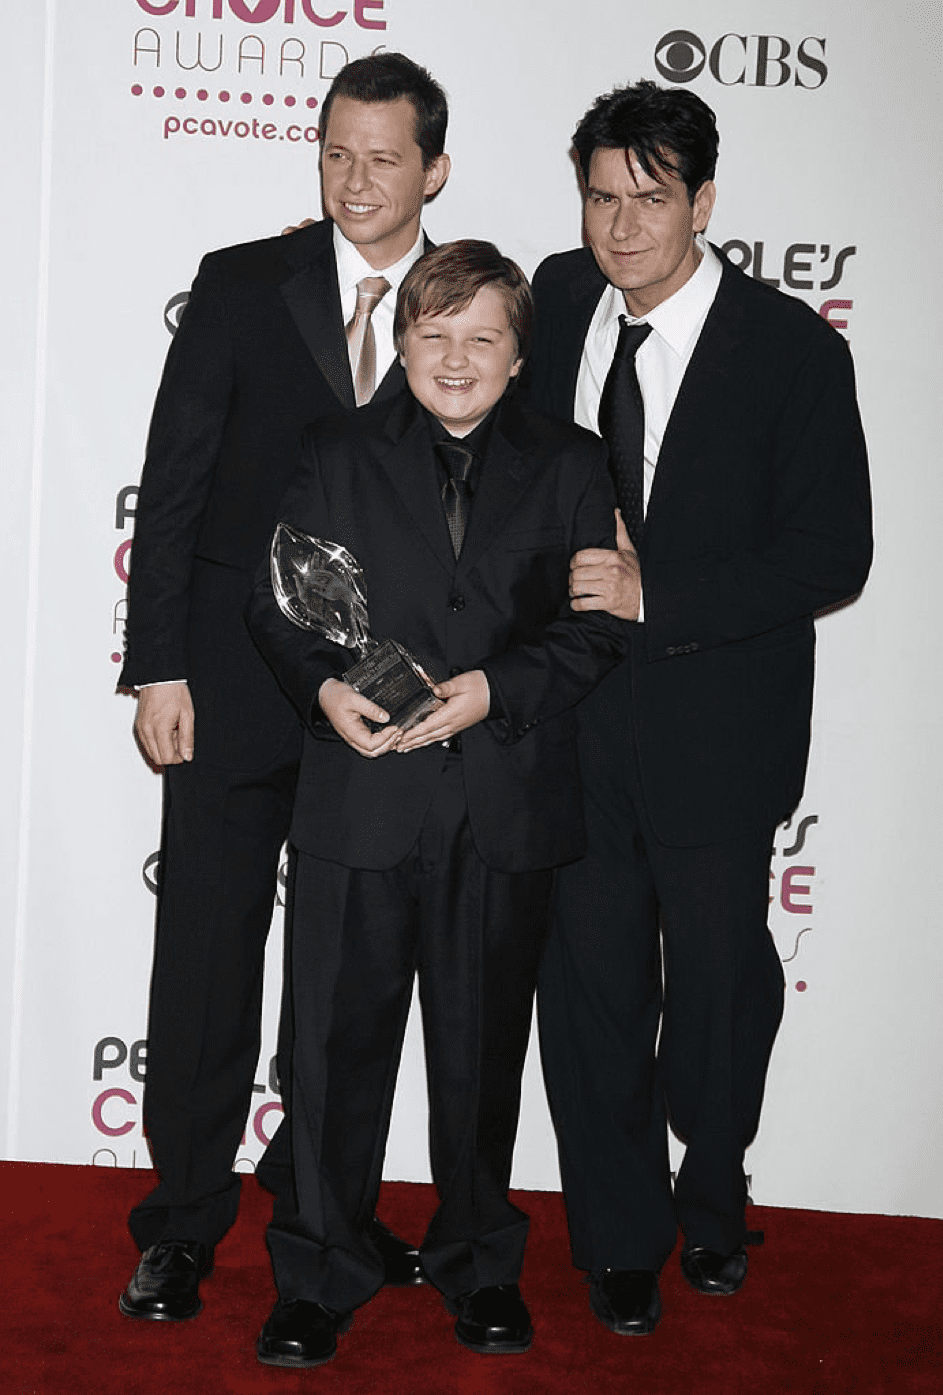 Jon Cryer, Angus T. Jones und Charlie Sheen, Gewinner von Favorite TV Comedy für "Two and a Half Men", 2007. | Quelle: Getty Images